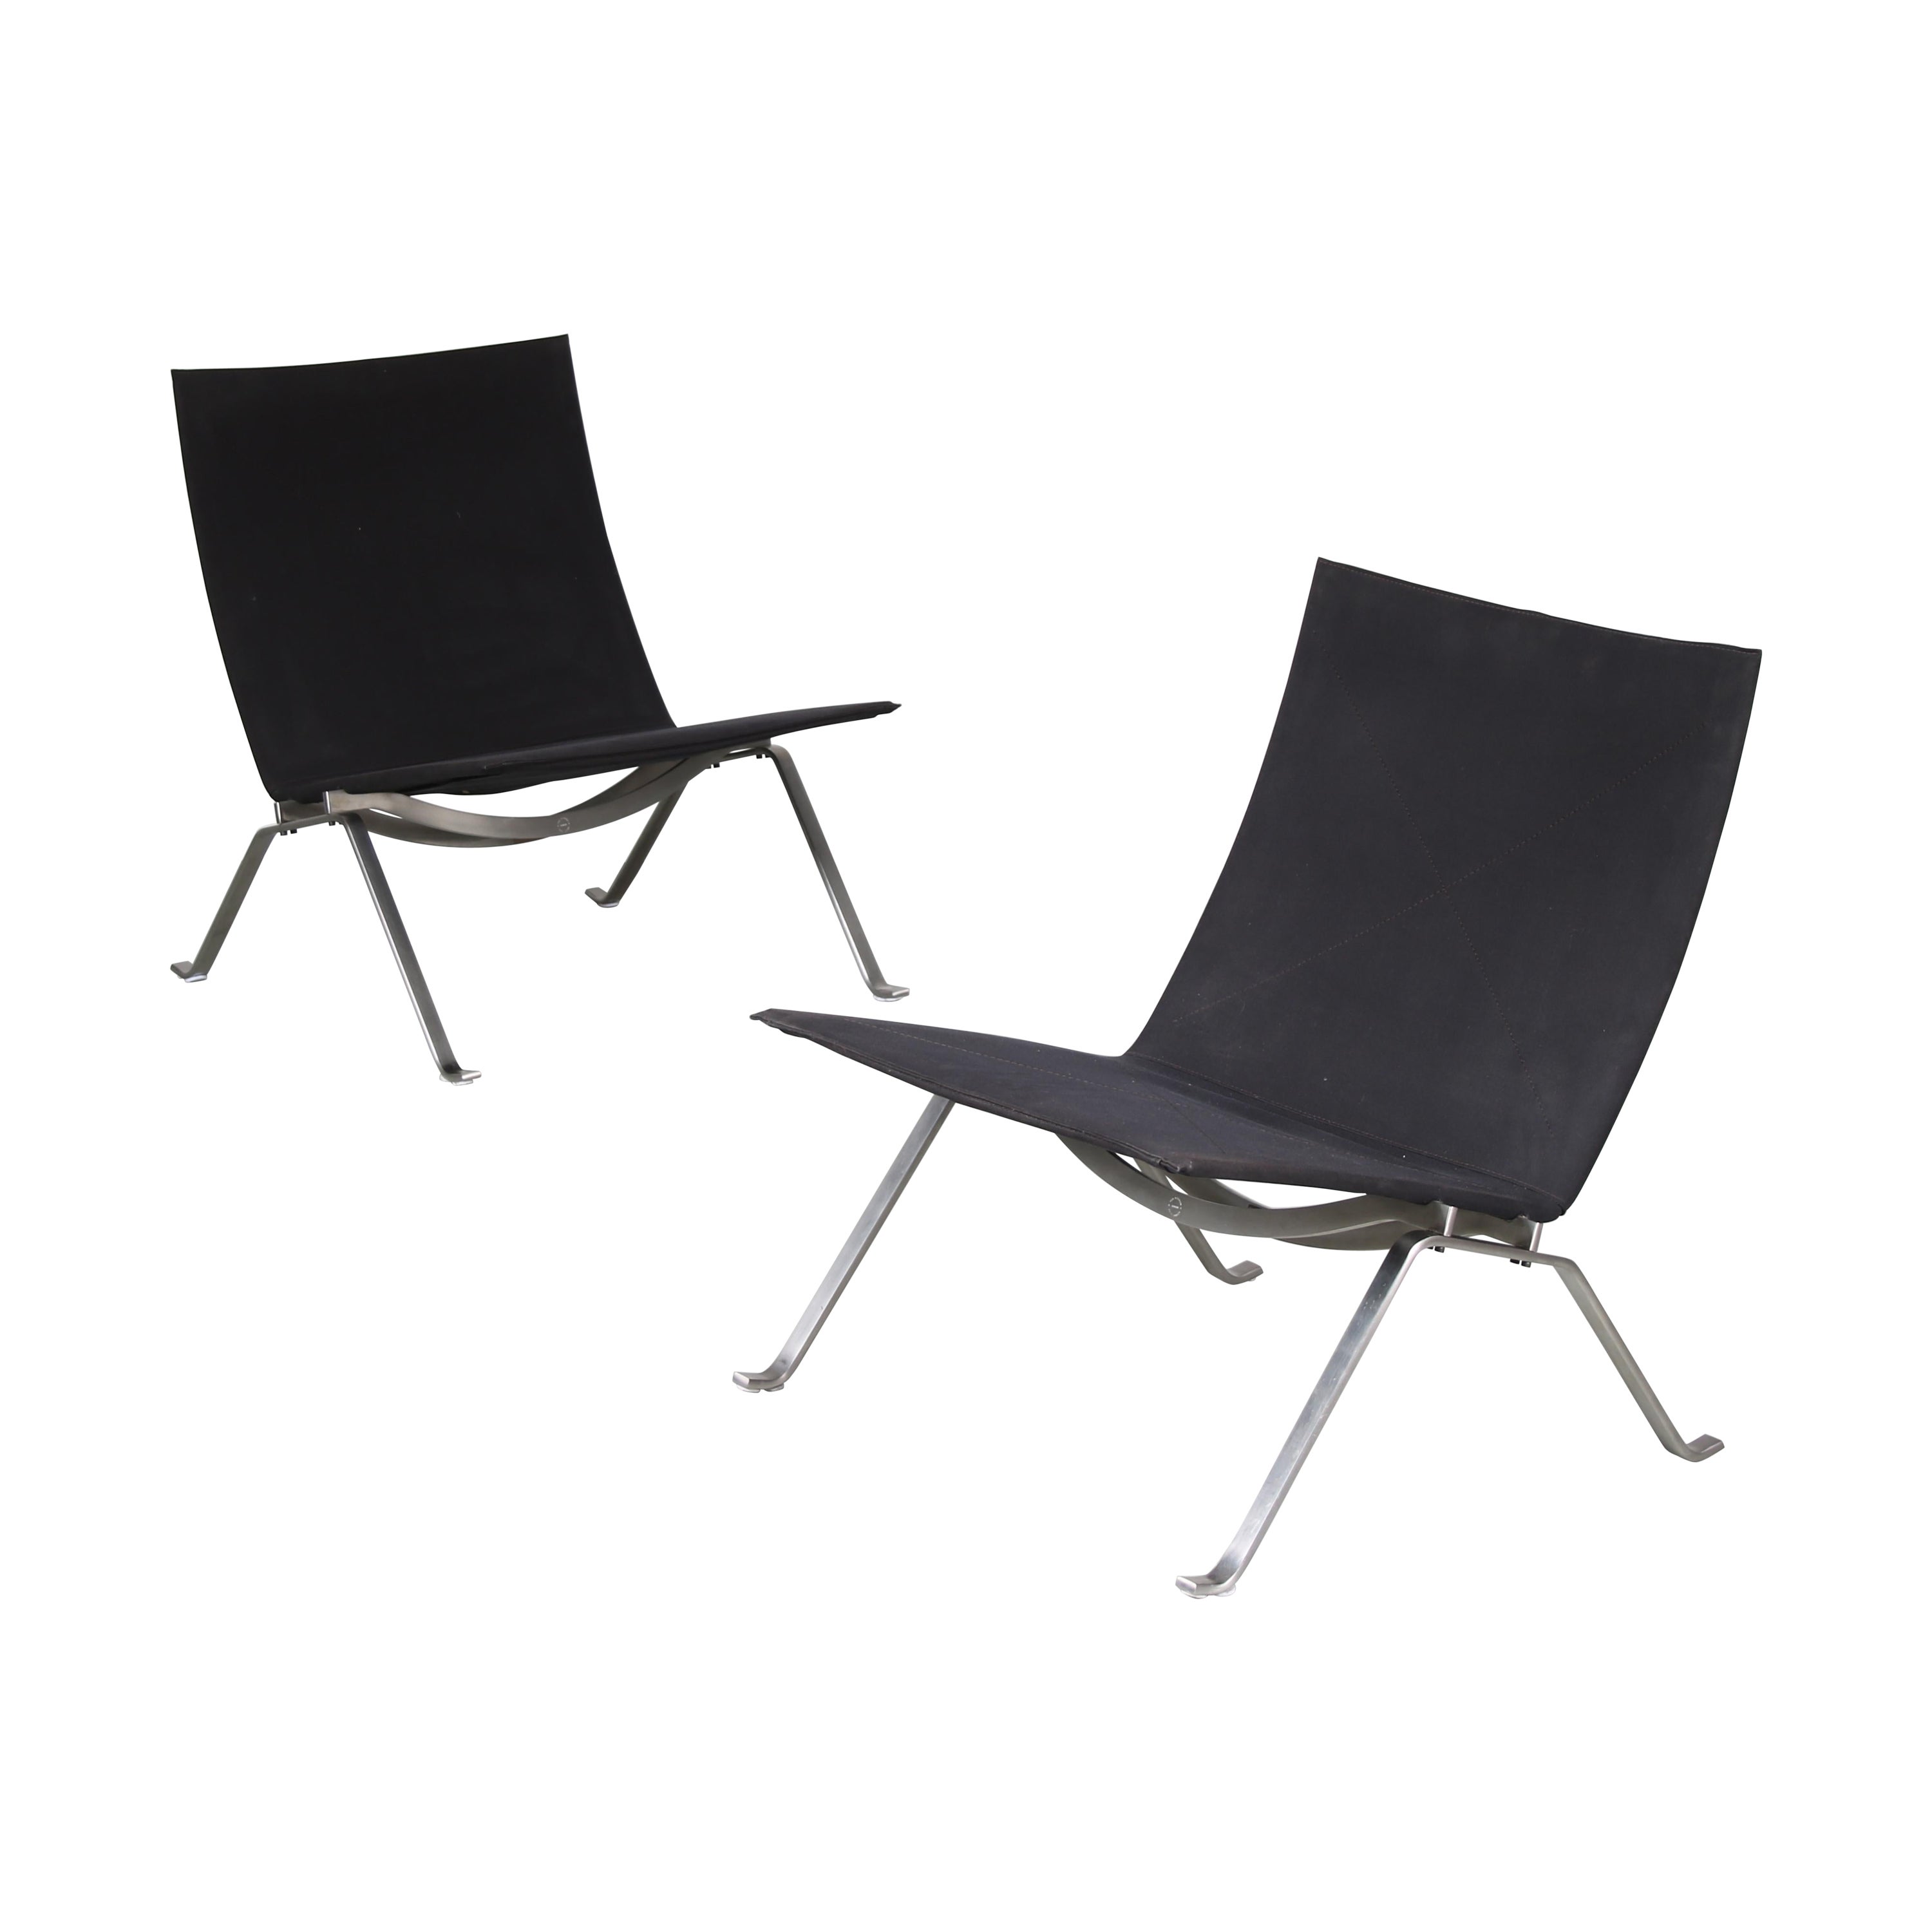 Pair of PK22 Chairs by Poul Kjaerholm for Fritz Hansen, Denmark, 2010